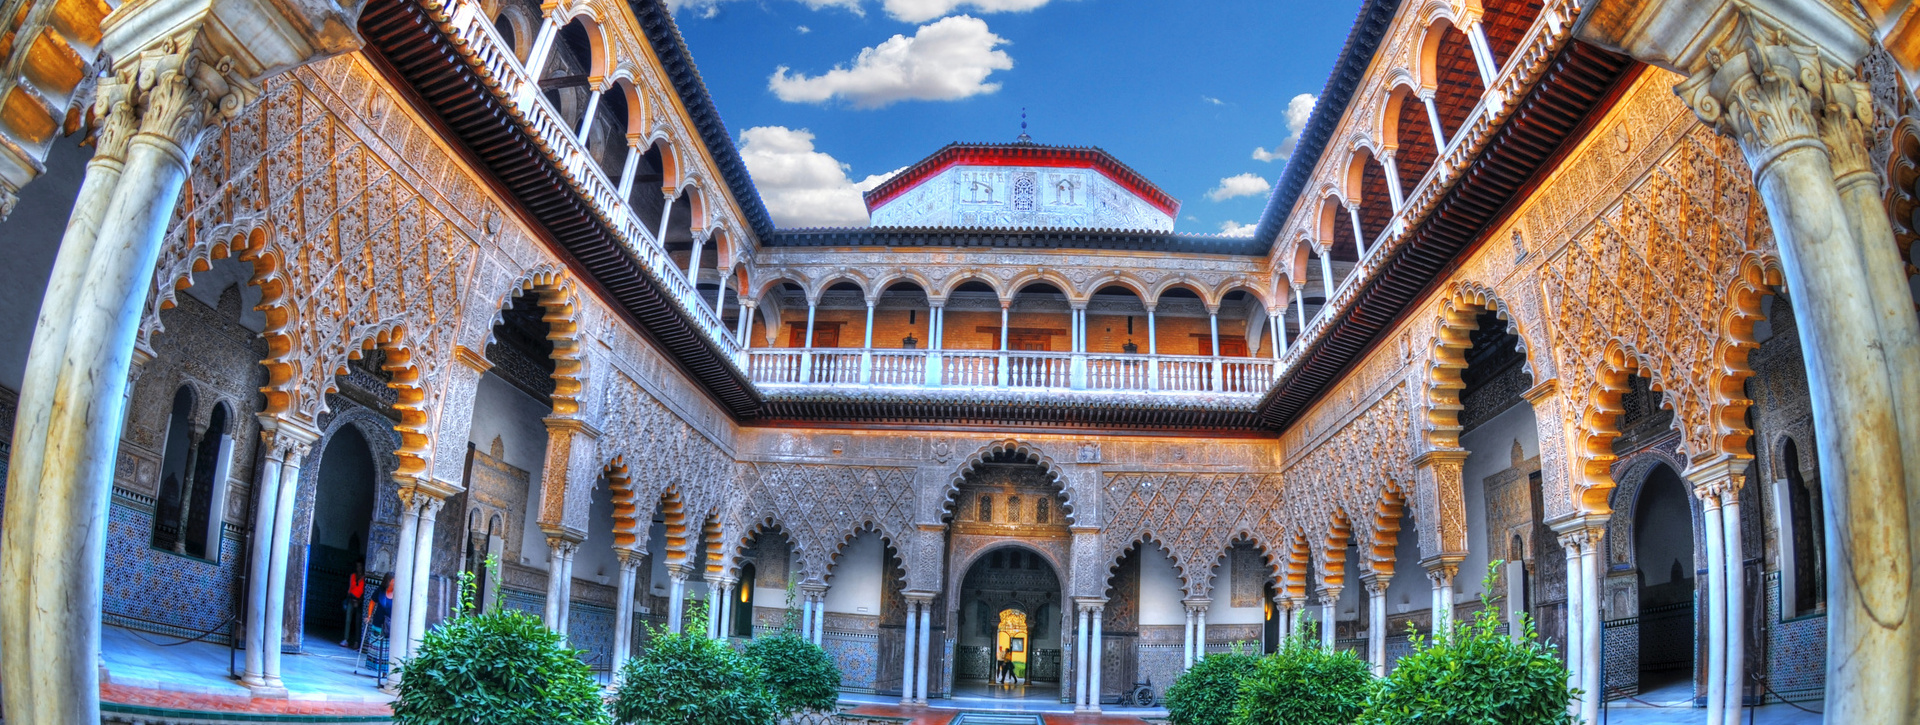 Visita privada por Sevilla: Real Alcázar y paseo en barco